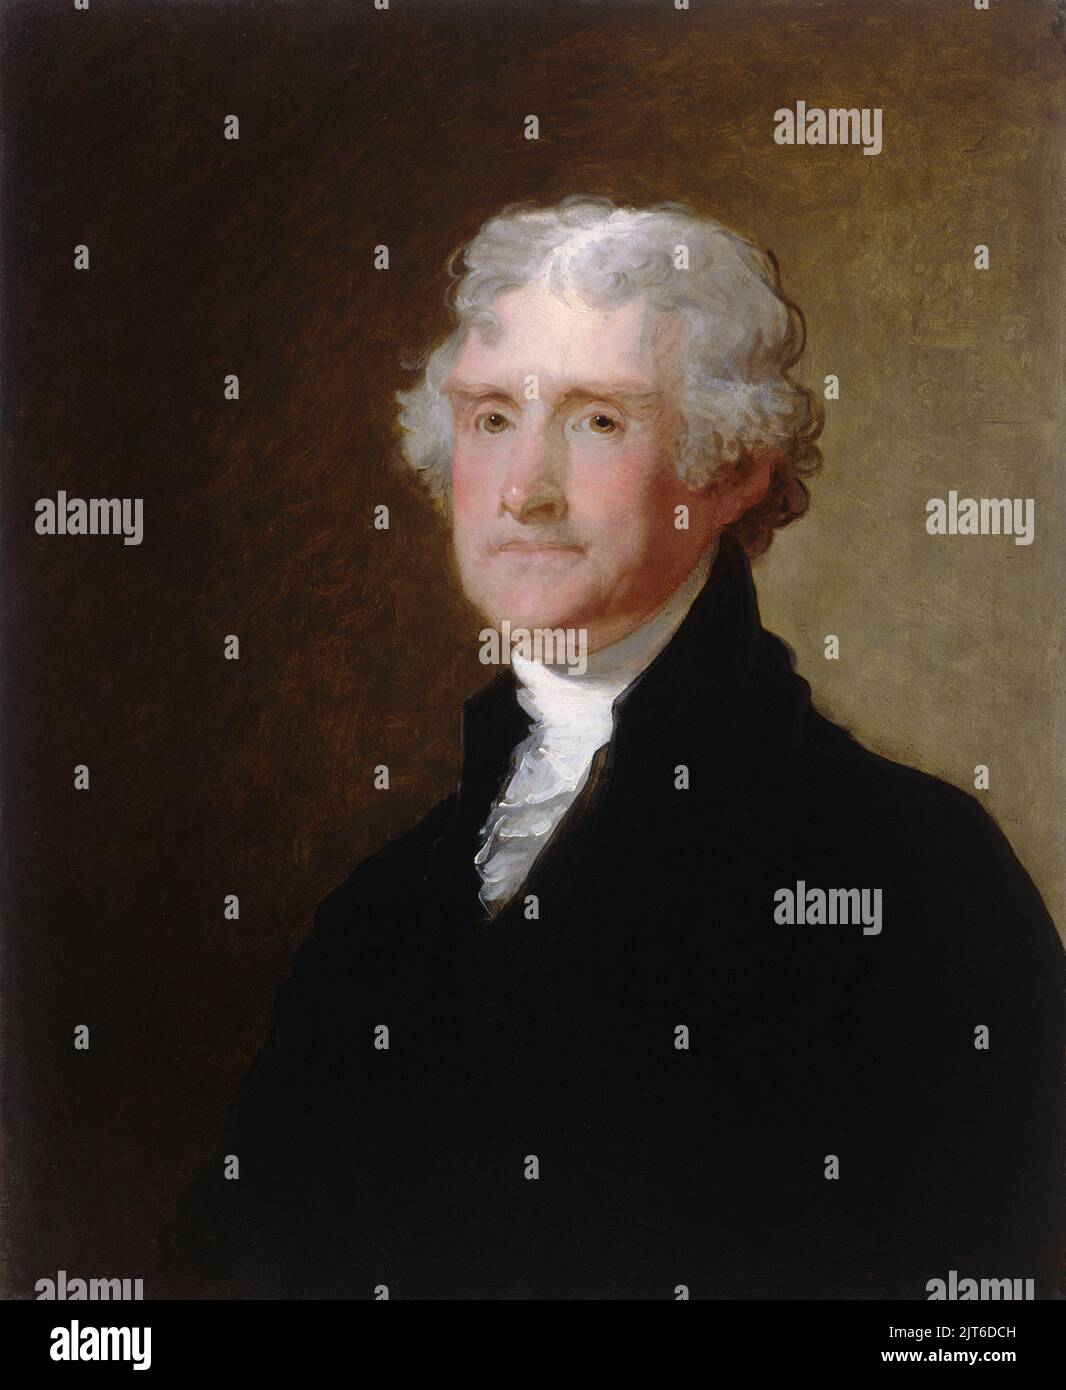 Un portrait de Thomas Jefferson. Le portrait est de c. 1821, lorsque Jefferson avait 78 ans. Peint par Gilbert Stuart Banque D'Images